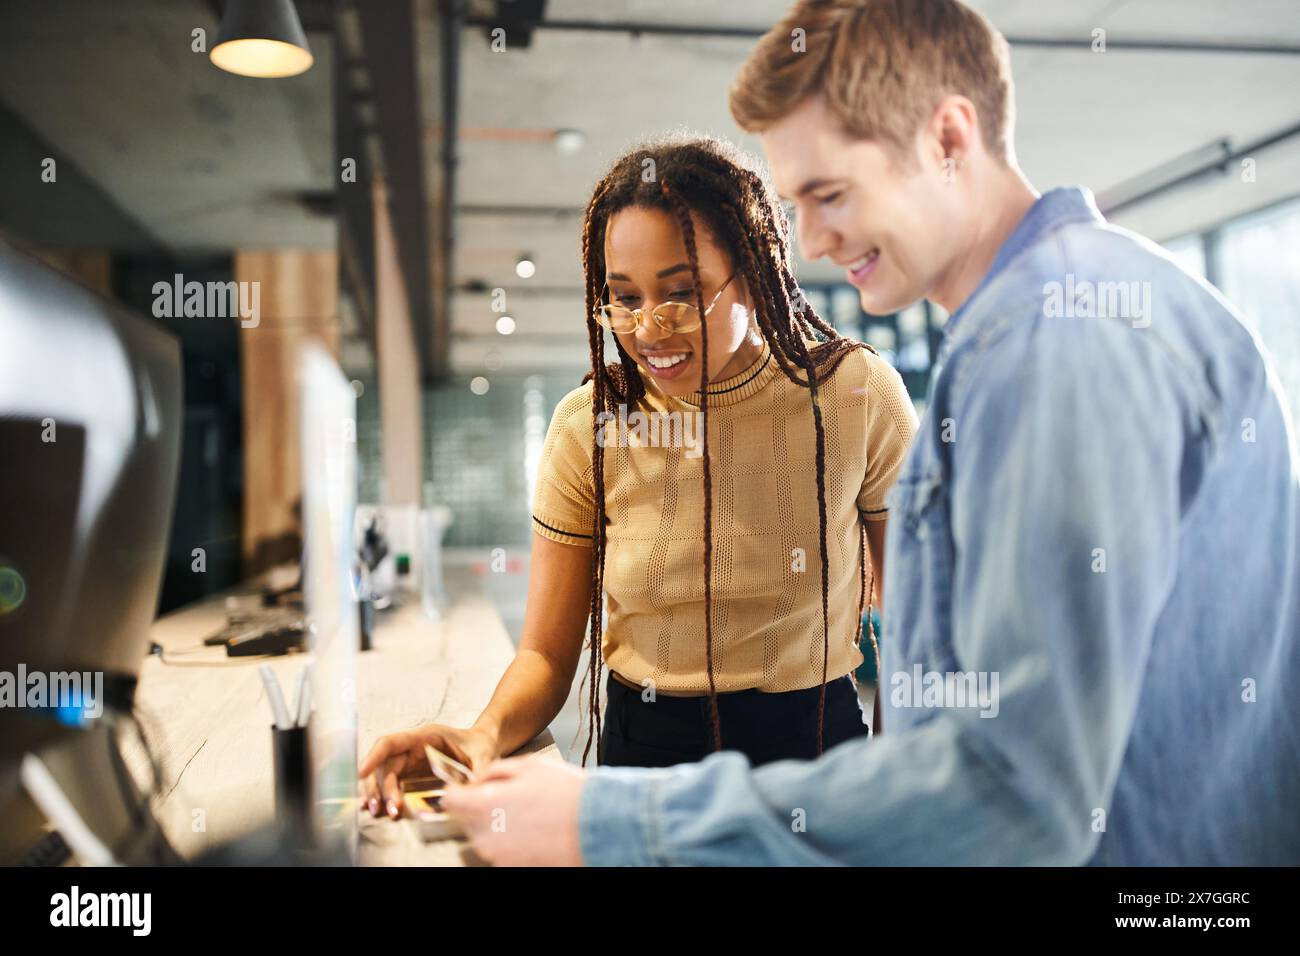 Ein multikultureller Mann und eine Frau in lässiger Kleidung sehen sich während einer Geschäftsreise gemeinsam eine Visitenkarte in einer Hotellobby an. Stockfoto